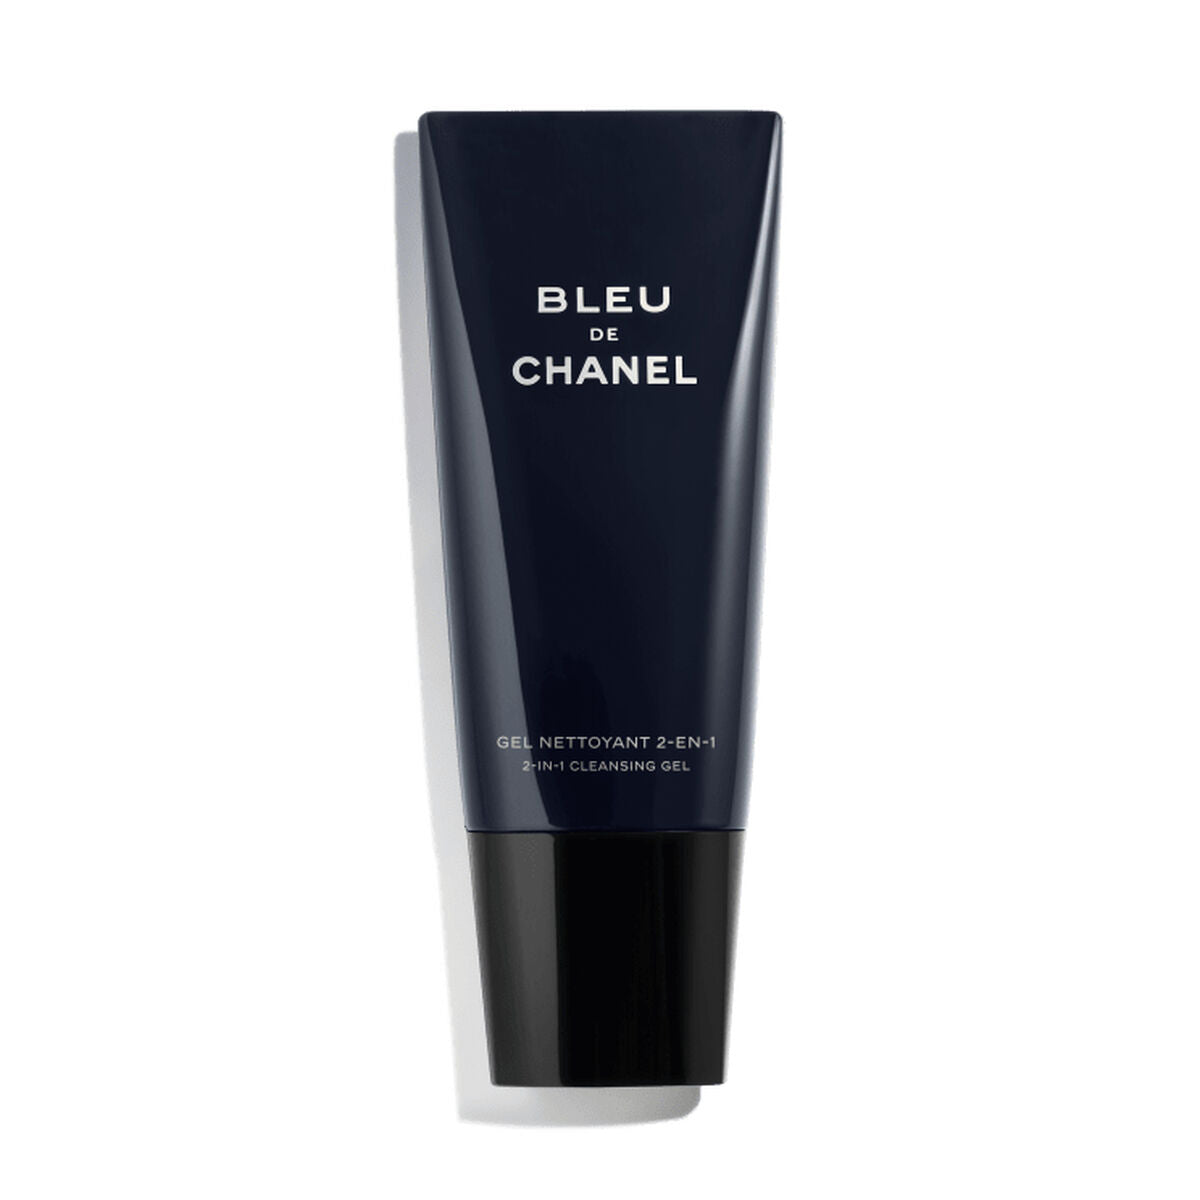 Kaufe Gesichtsreinigungsgel Chanel Bleu de Chanel 2-in-1 Bleu de Chanel bei AWK Flagship um € 78.00